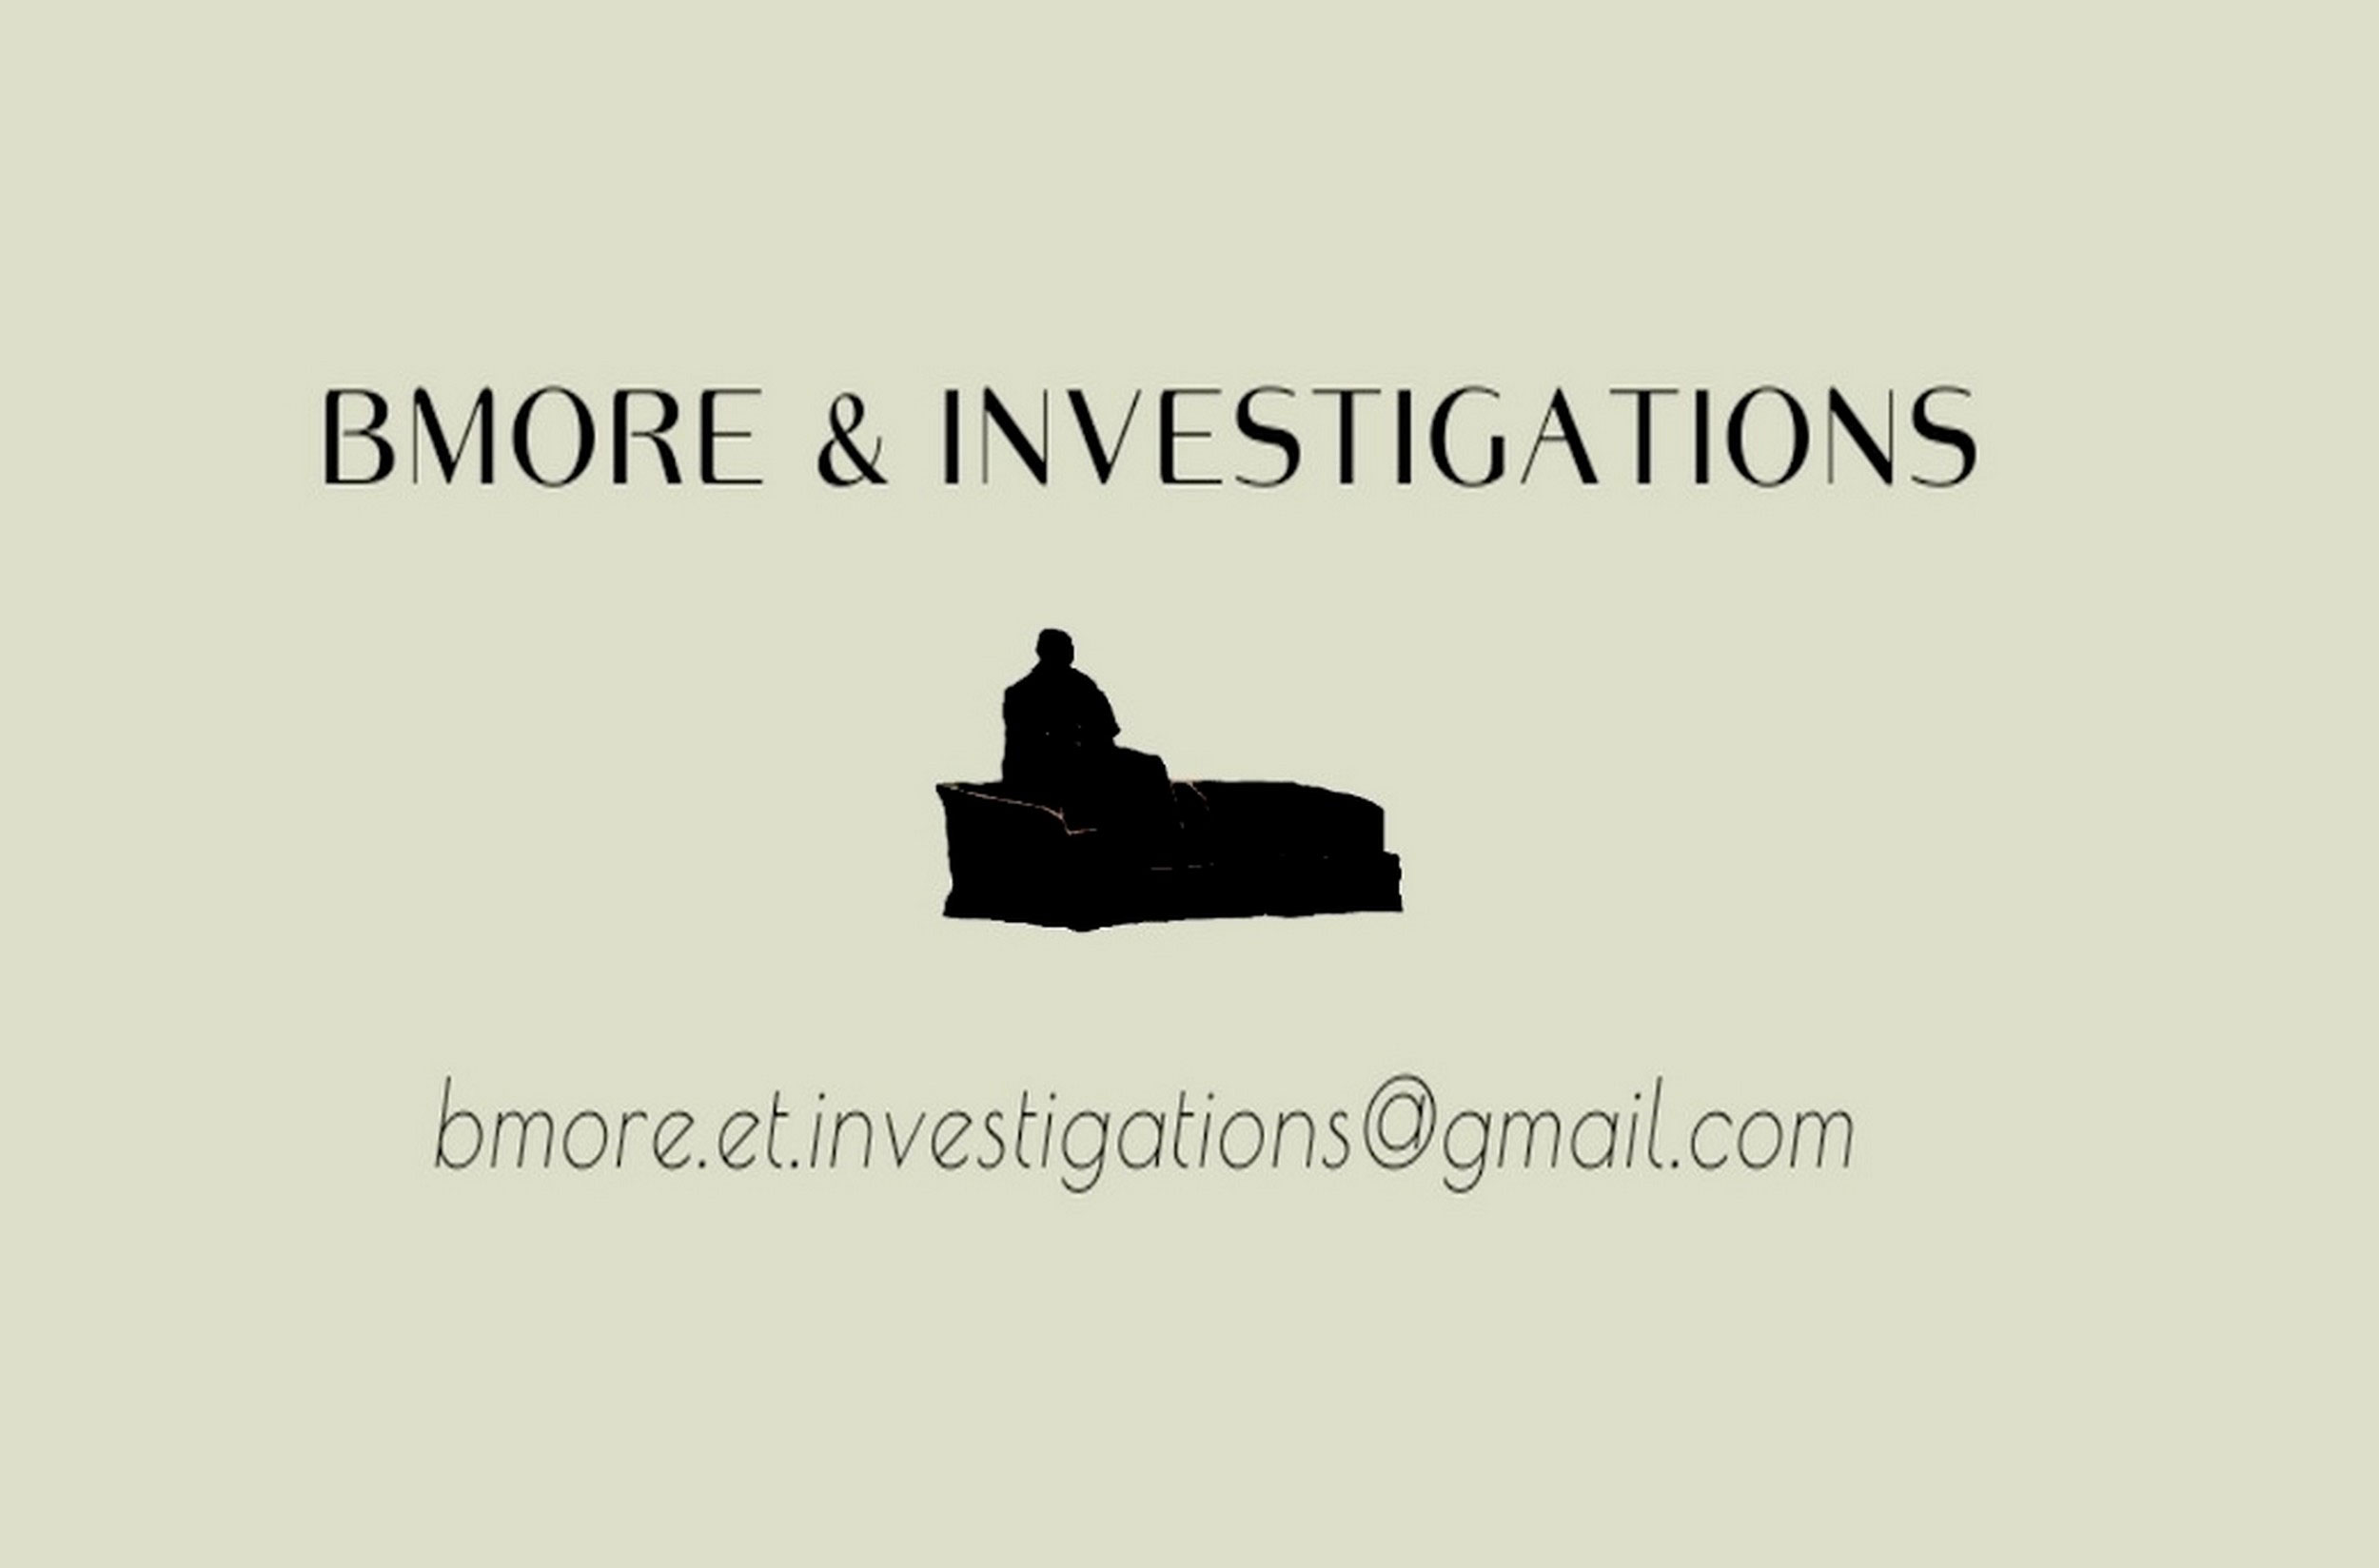 La Bmore & Investigations, composée du détective G. B. Baltimore et de son assistante Penny, a mené l’enquête sur Marcelle Pichon. On peut les contacter à l’adresse figurant sur leur carte de visite.<br><br>